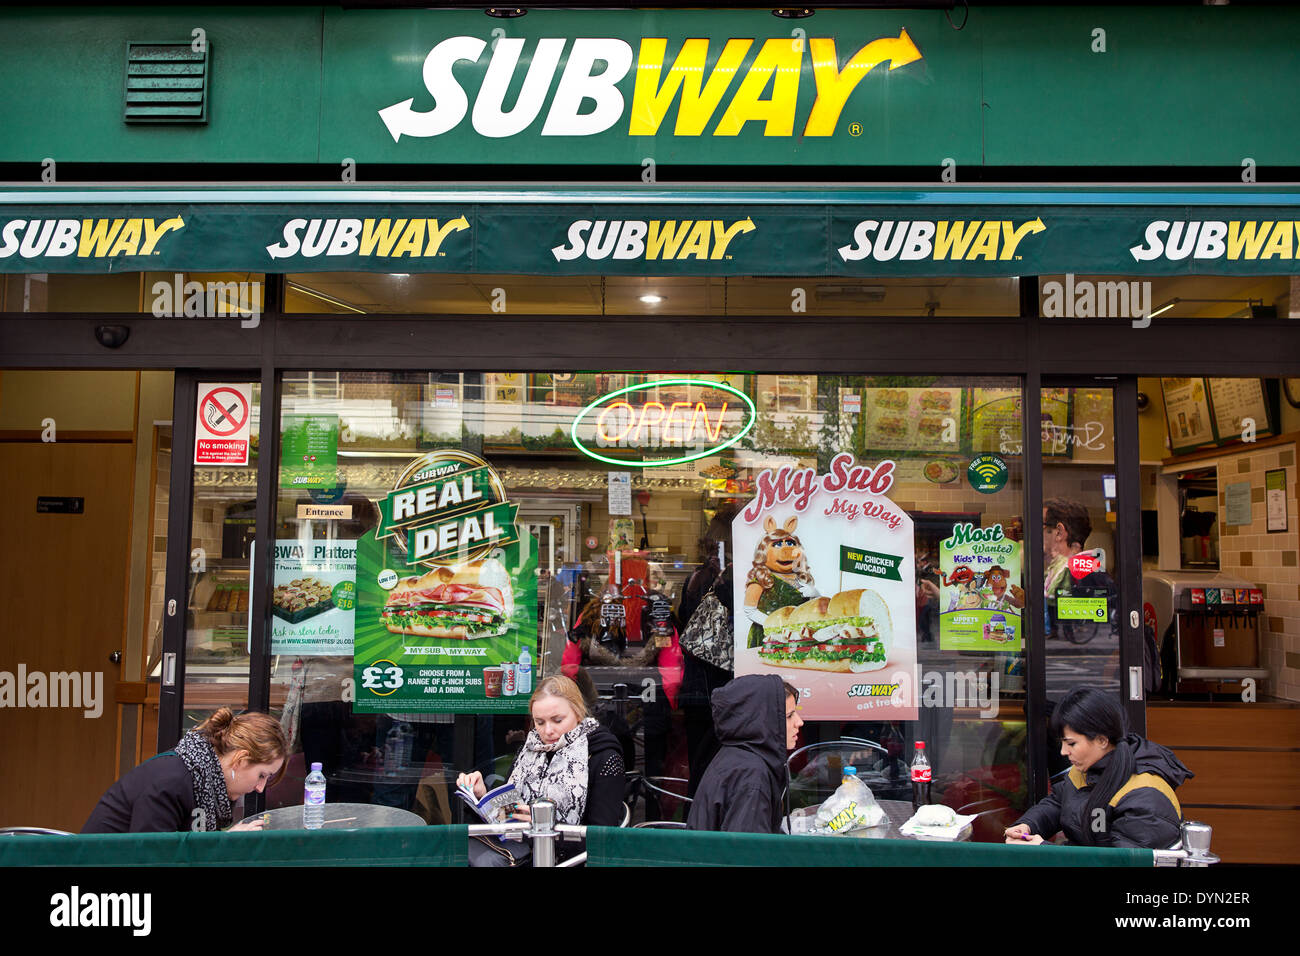 Subway food chain. Stock Photo